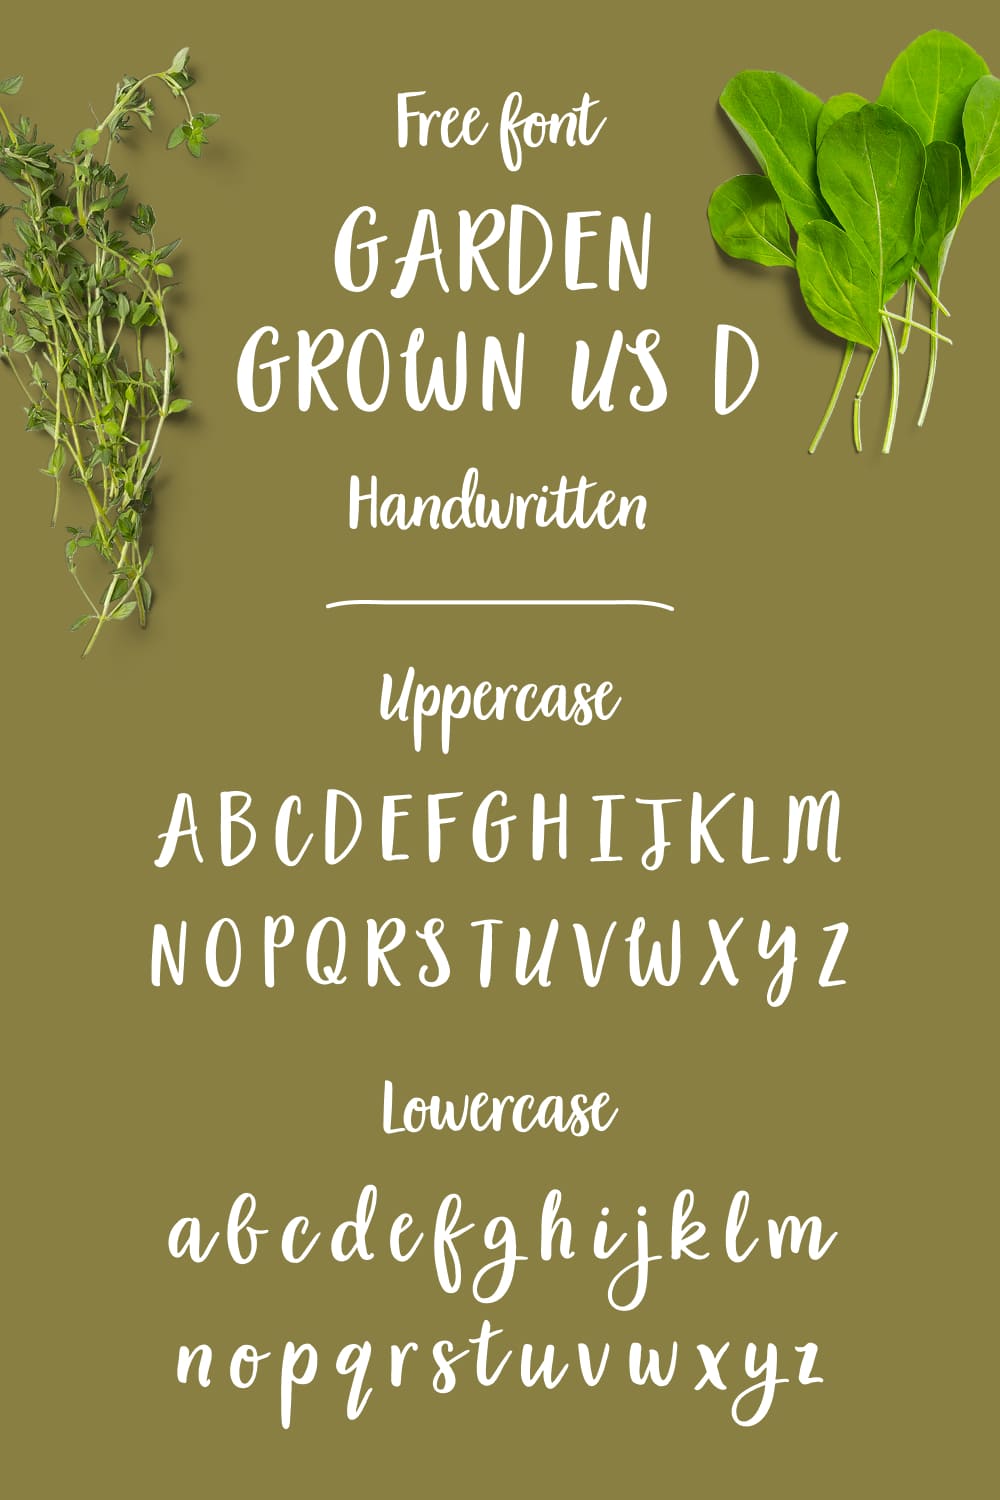 Pinterest Handwritten alphabet preview garden grown font free MasterBundles.